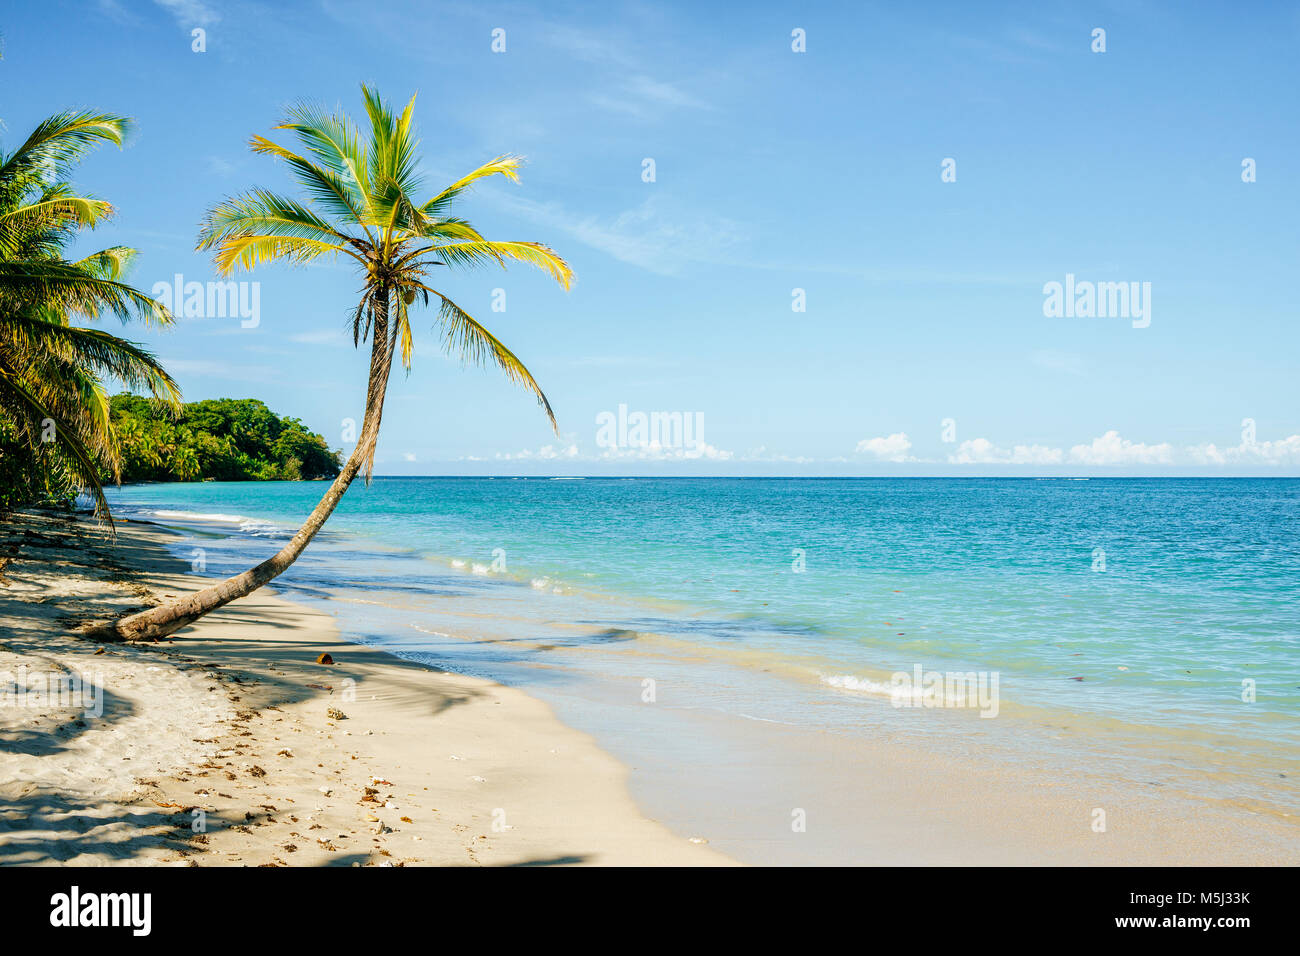 Costa Rica, limón, playa con palmeras en el parque nacional de Cahuita Foto de stock